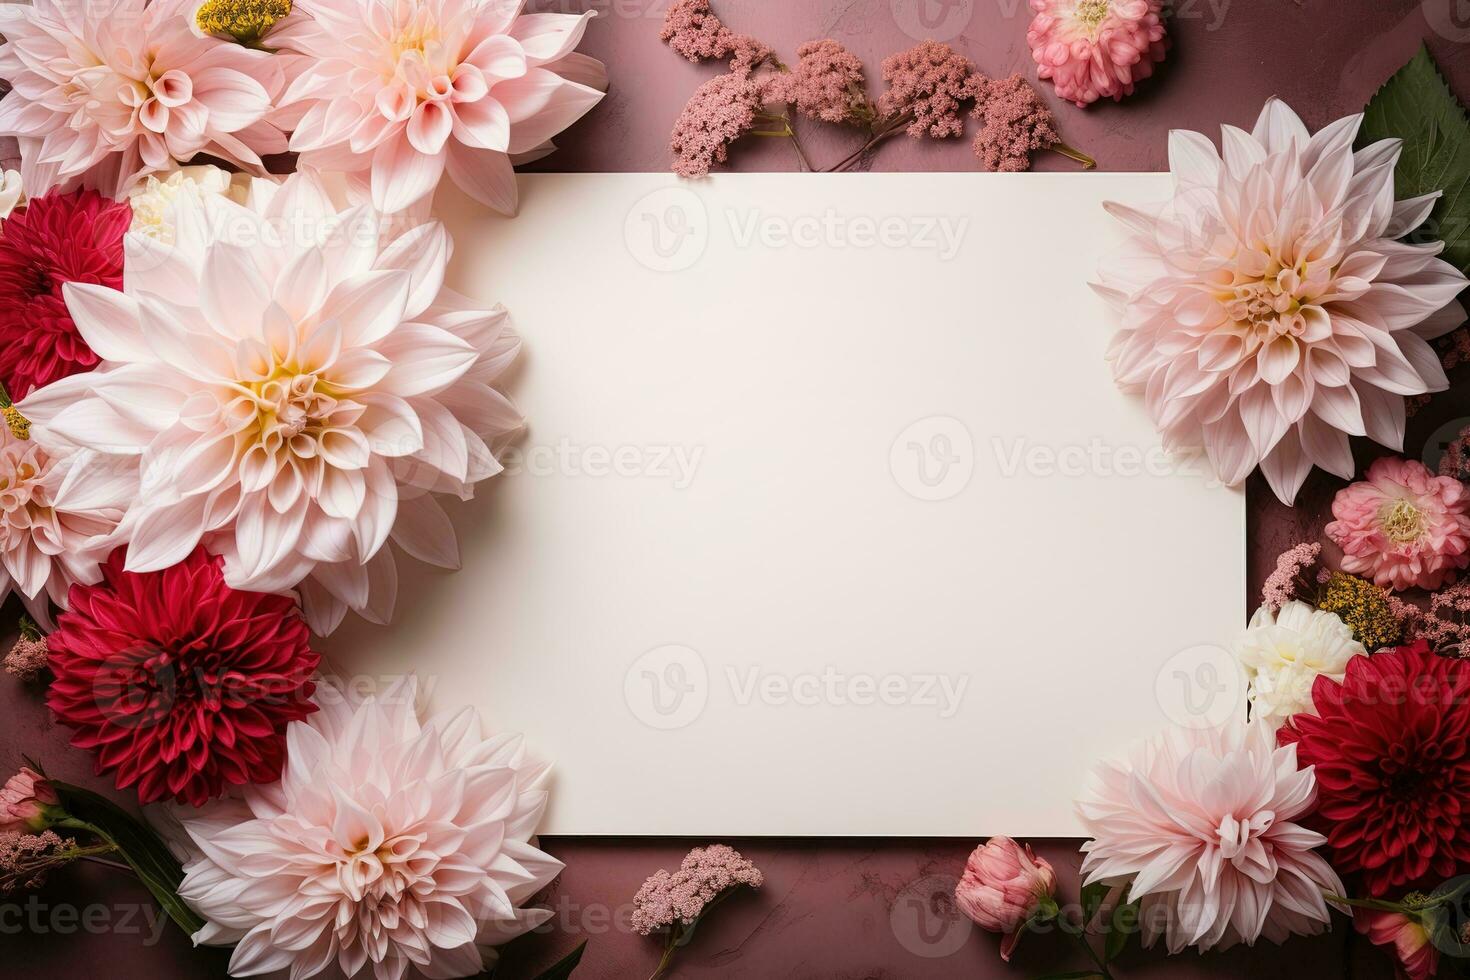 brincar branco em branco cartão Folha do papel em Rosa fundo com vermelho e Rosa dália flores foto